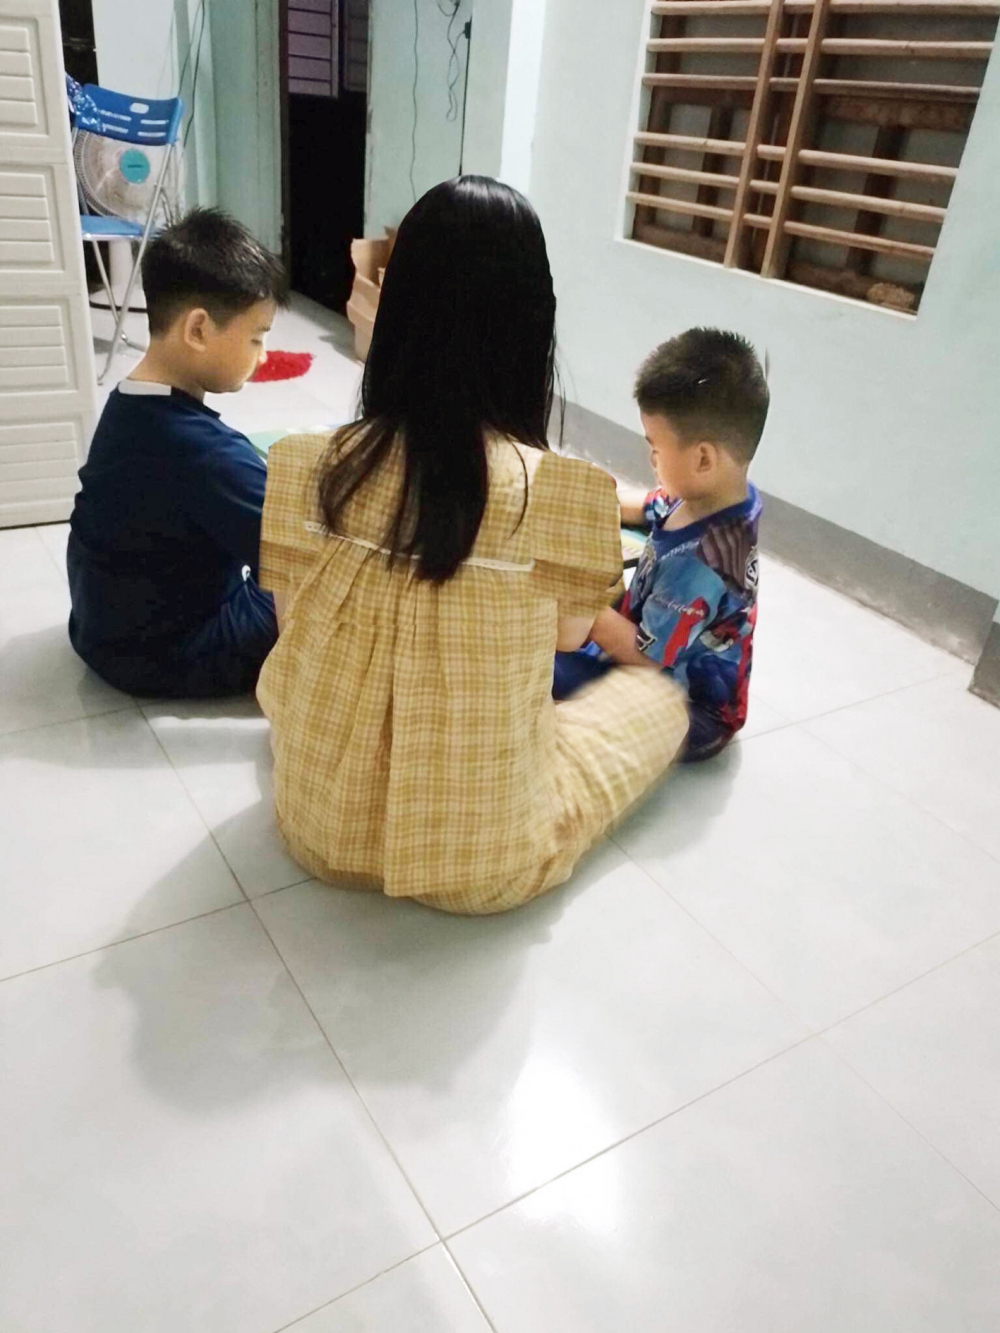 Chị Lưu Thị H. với hạnh phúc mỗi tối được vui đùa và dạy 2 con học - ẢNH: NHÂN VẬT CUNG CẤP